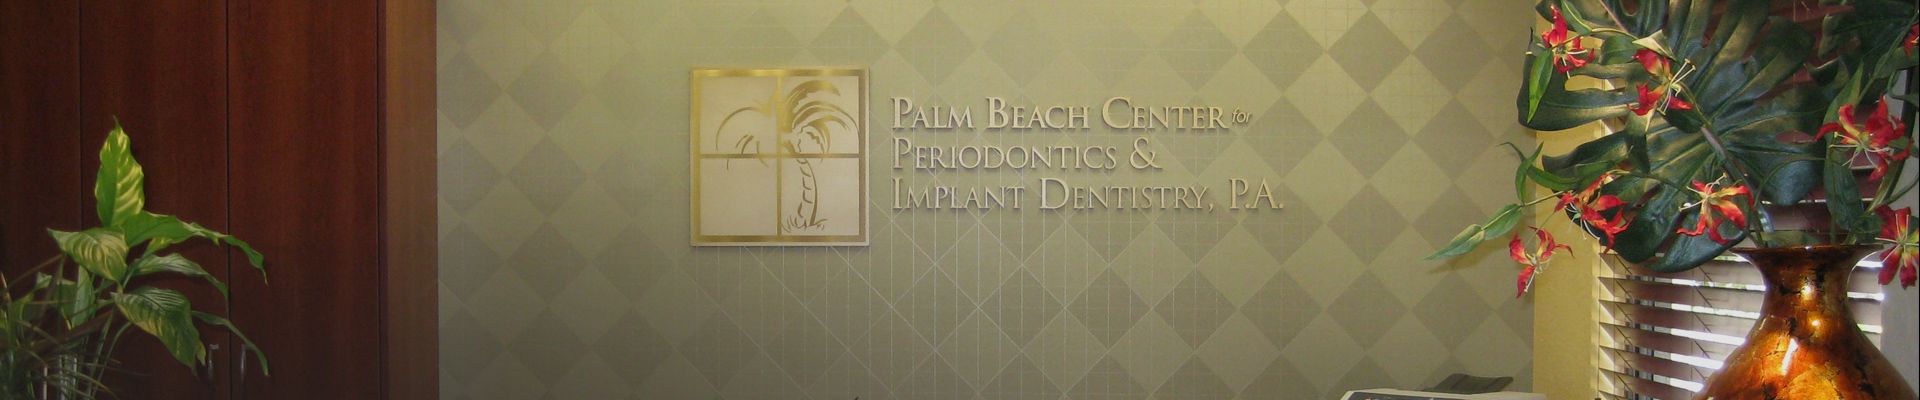 Palm Beach Center for Periodontics & Implant Dentistry